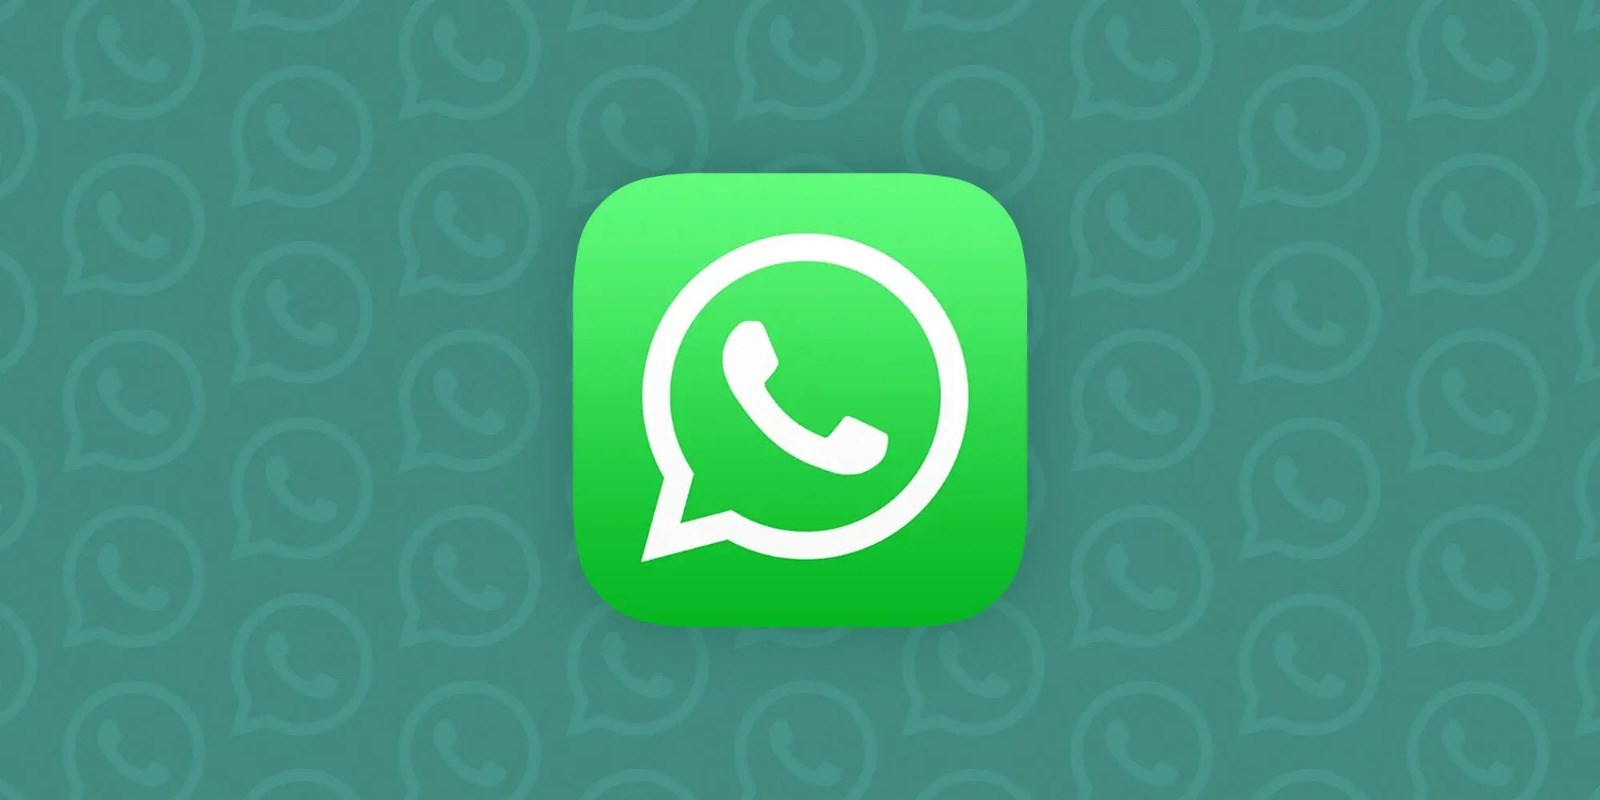 WhatsApp grup sohbetlerinin geçmiş katılımcılarını gösterecek